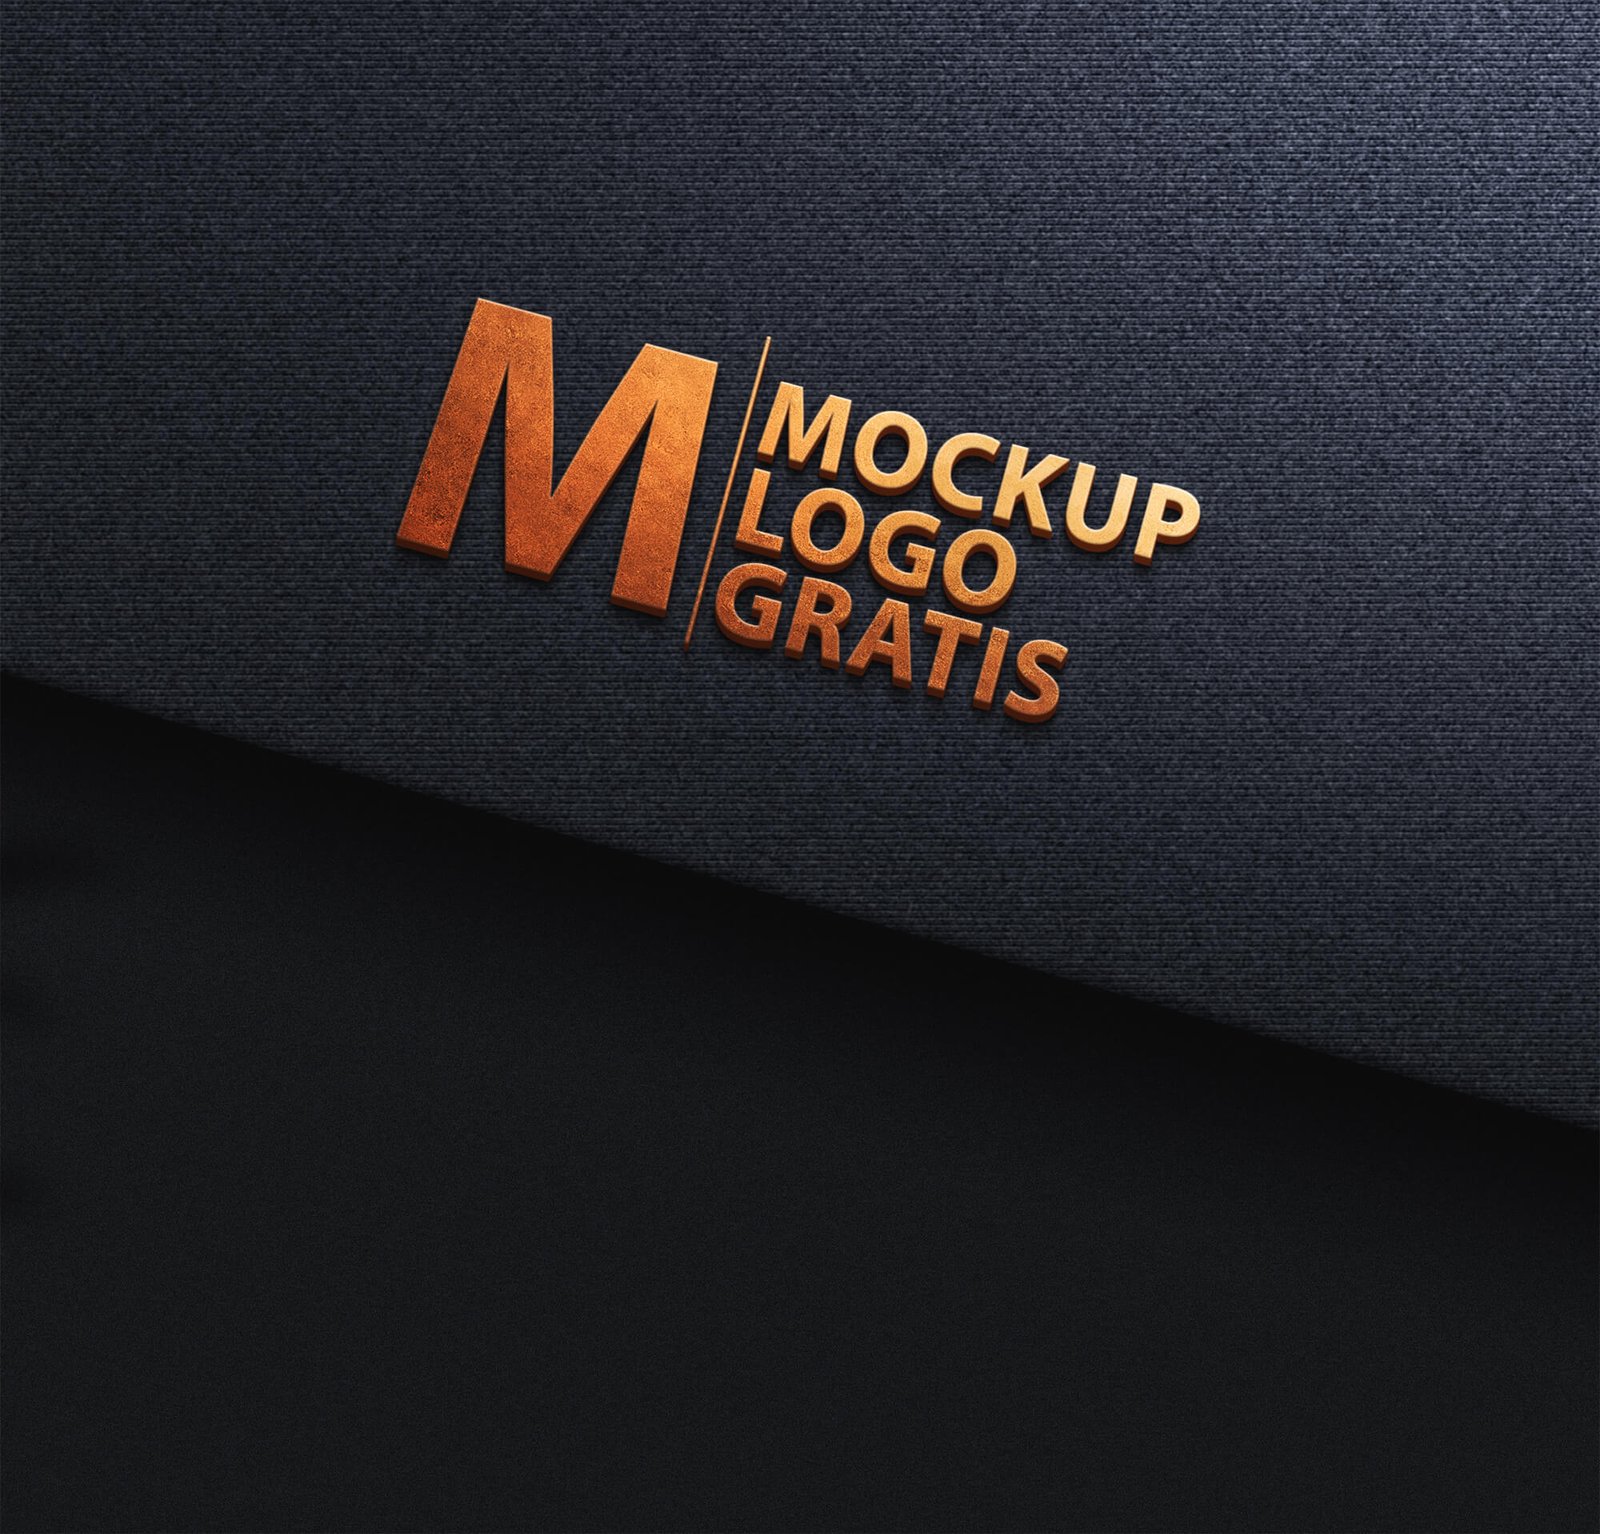 Download Free Mockup Logo Gratis Psd Template Mockup Den